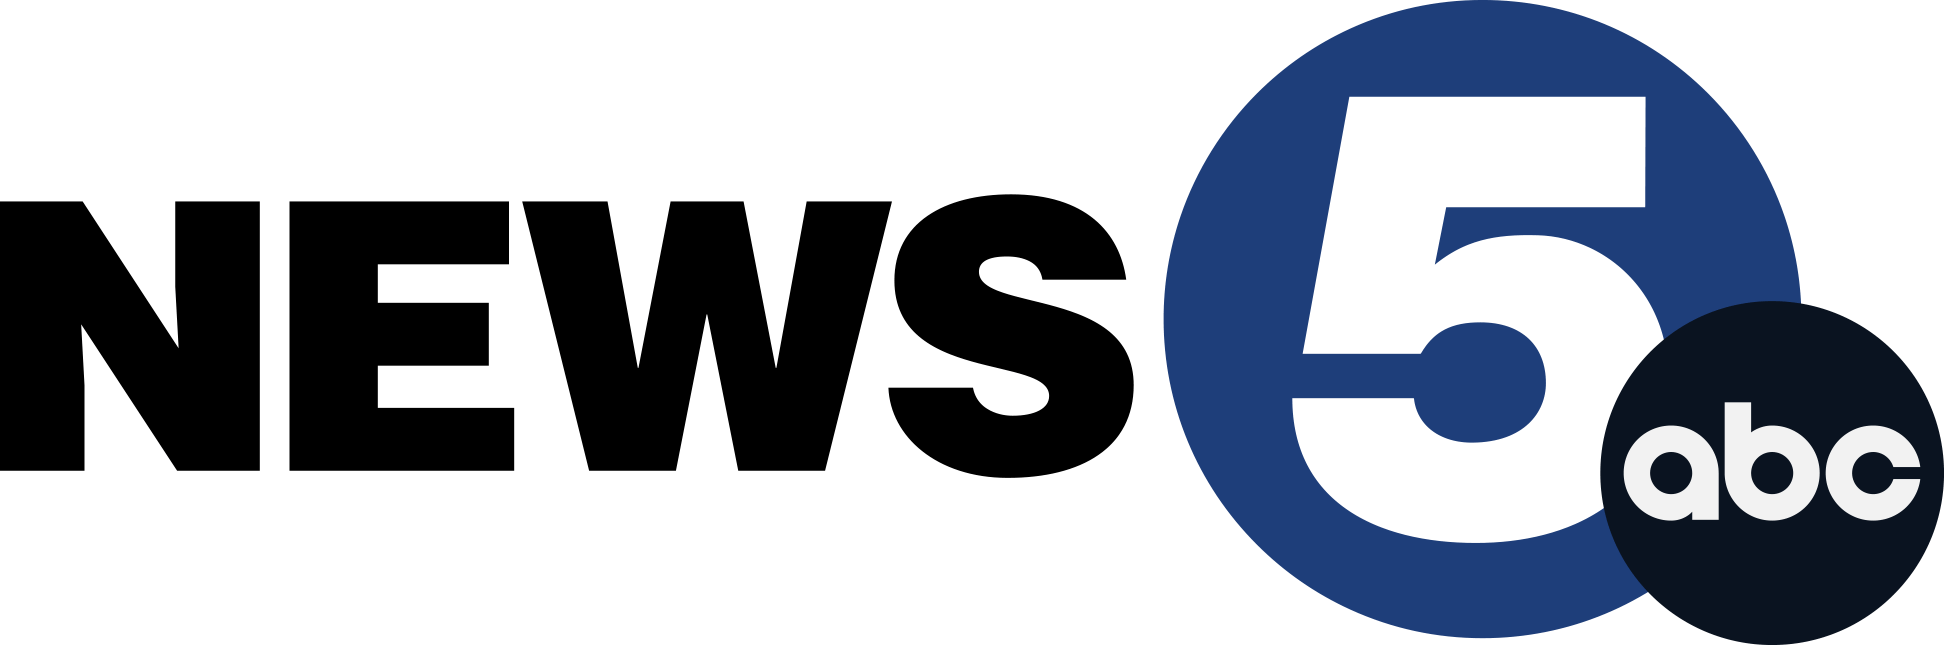 News 5 full logo color